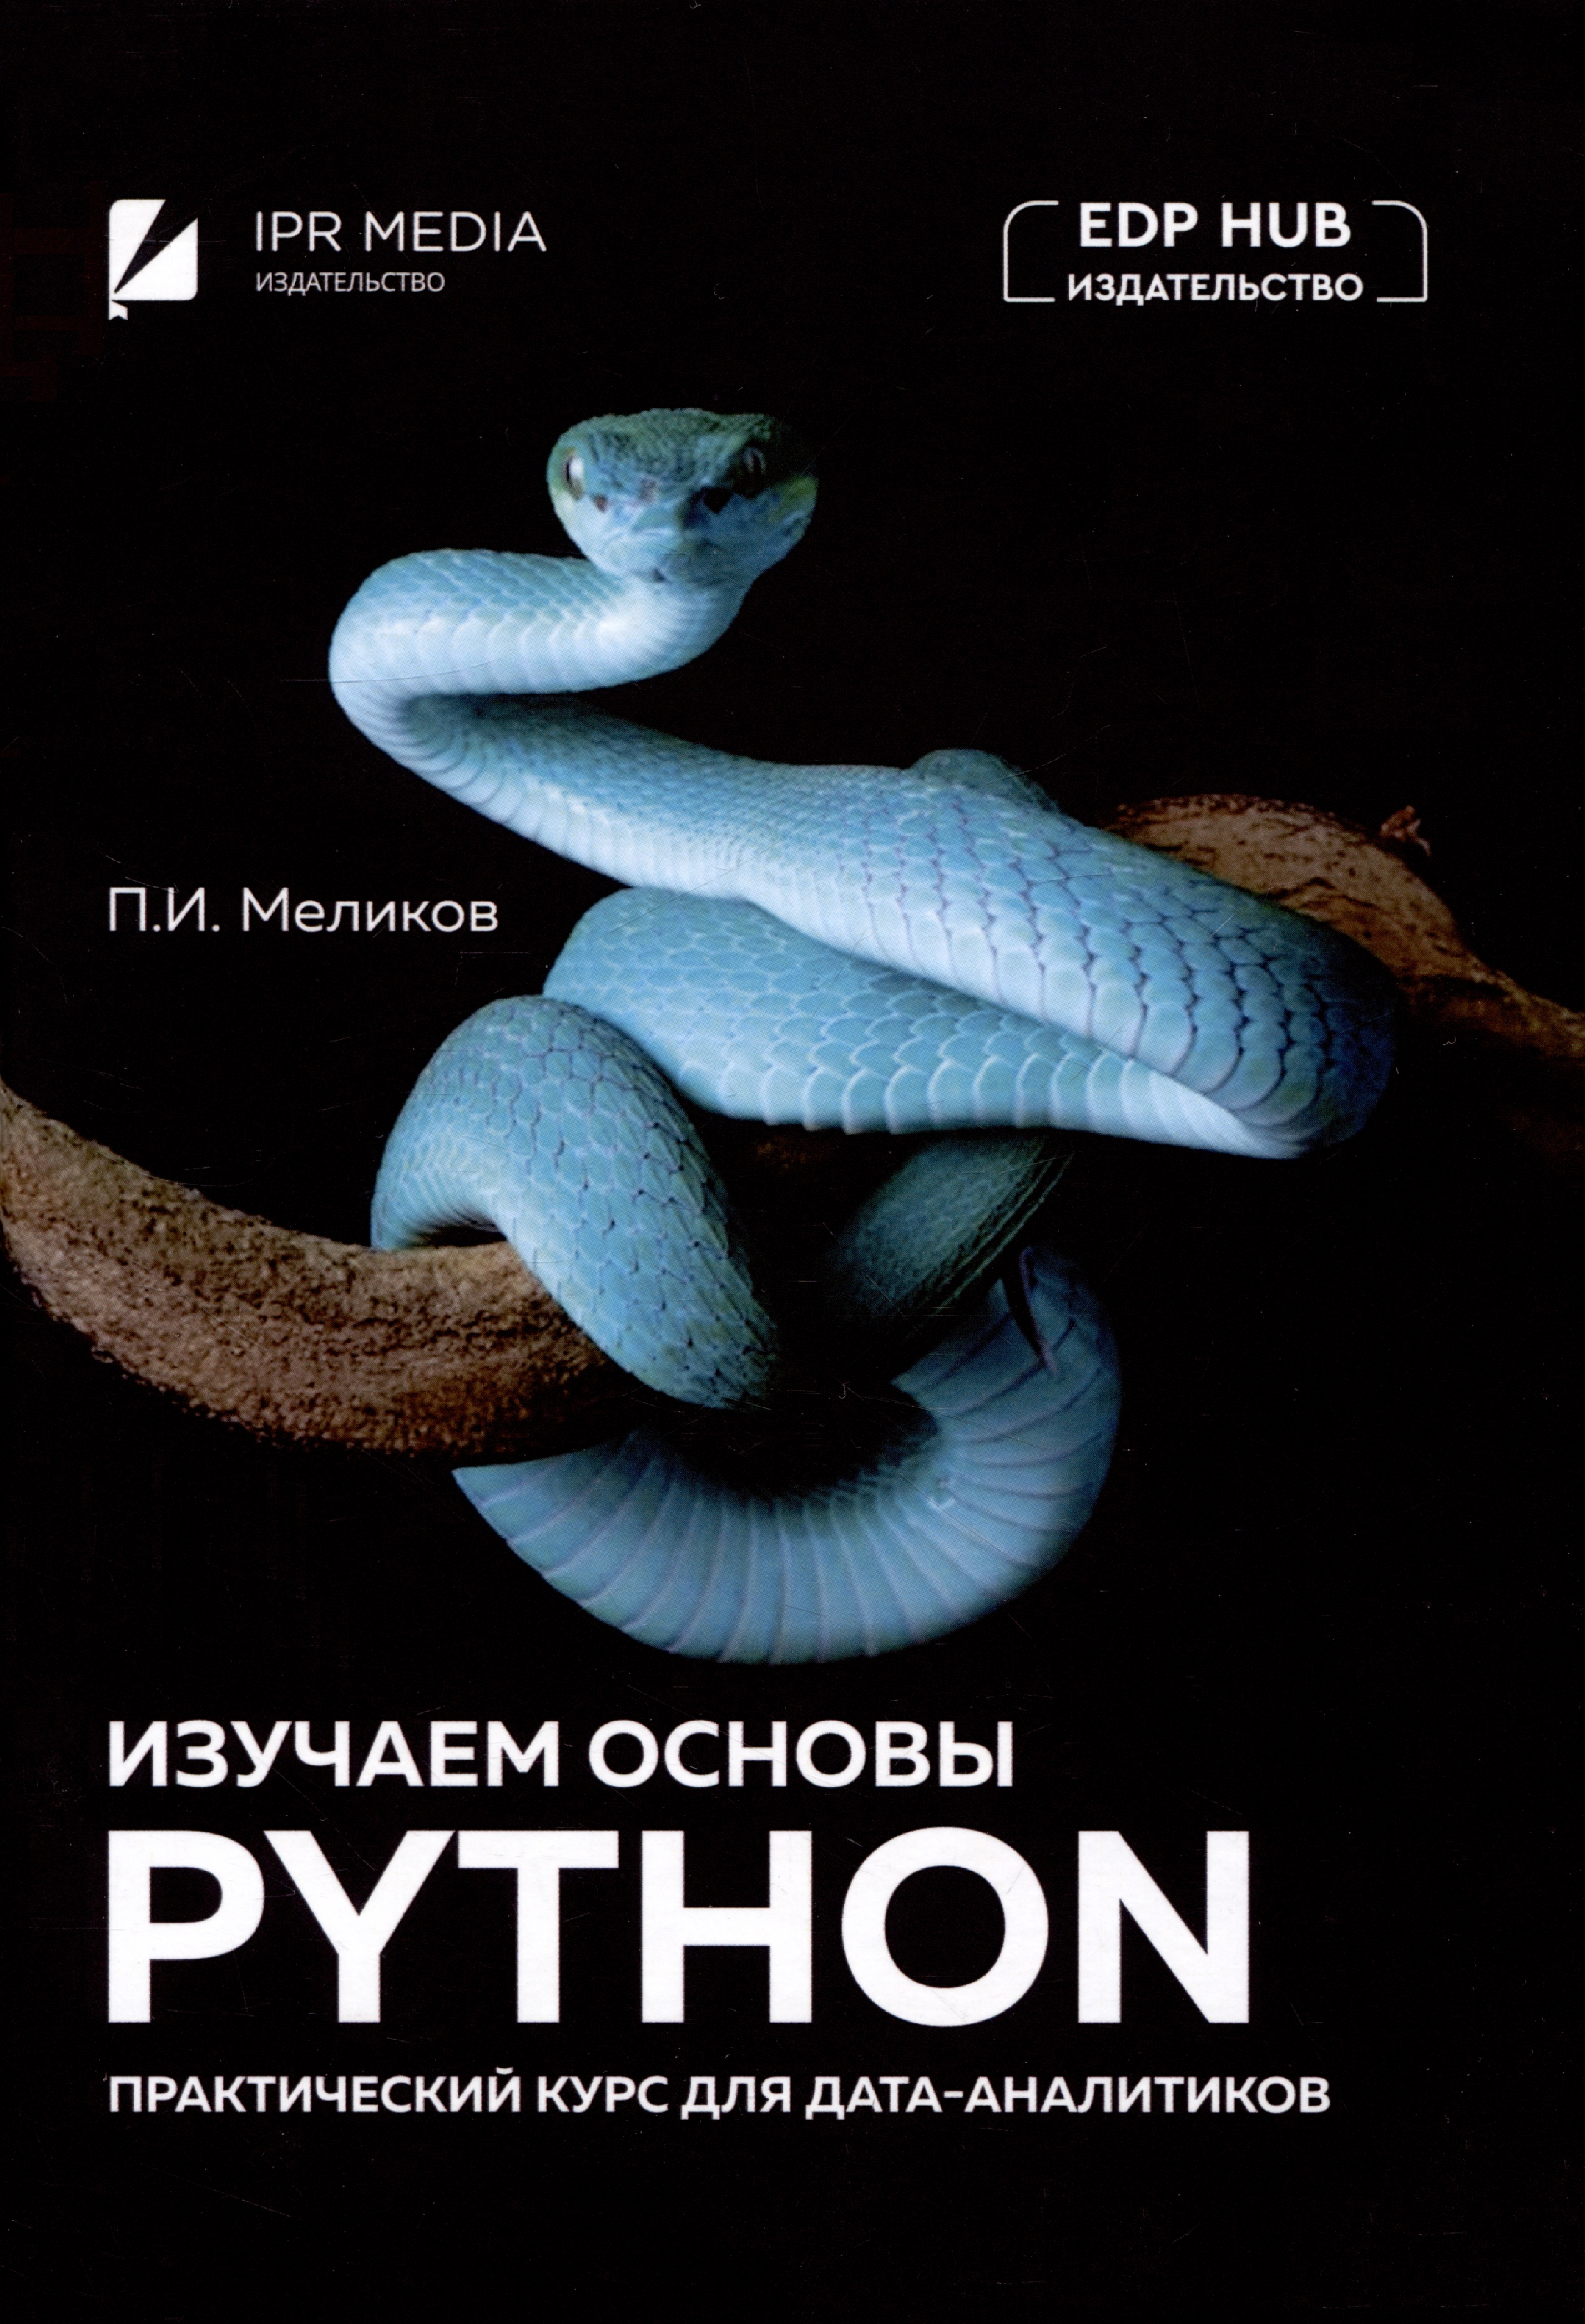 Меликов Павел Ильич Изучаем основы Python. Практический курс для дата-аналитиков прикладной анализ текстовых данных на python машинное обучение и создание приложений обработки естественного языка